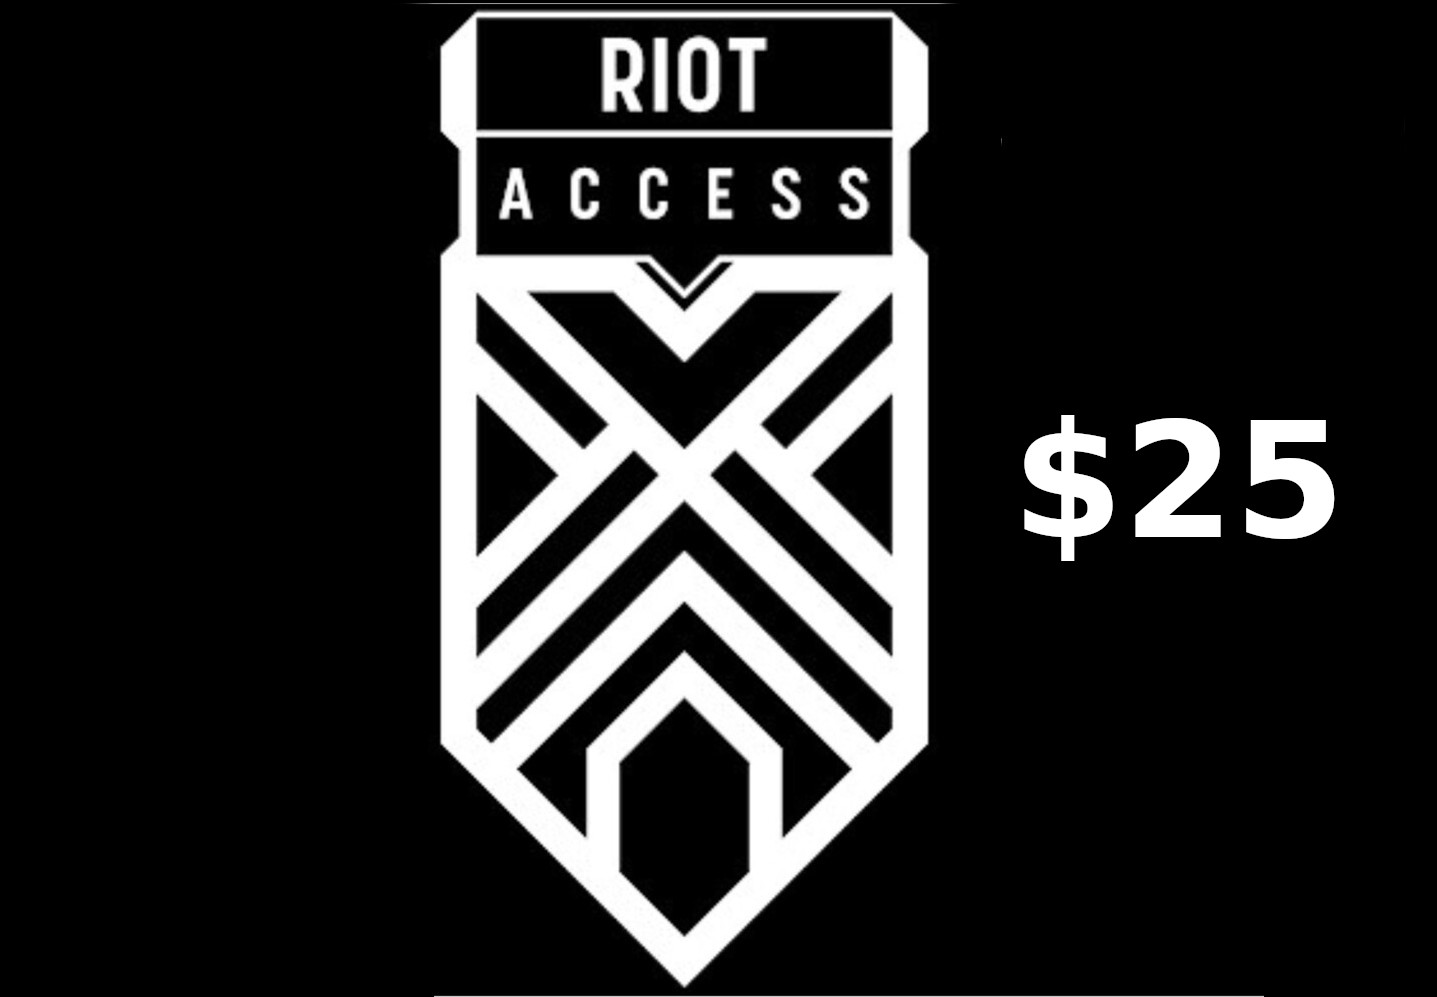 Riot Access $25 Code LATAM